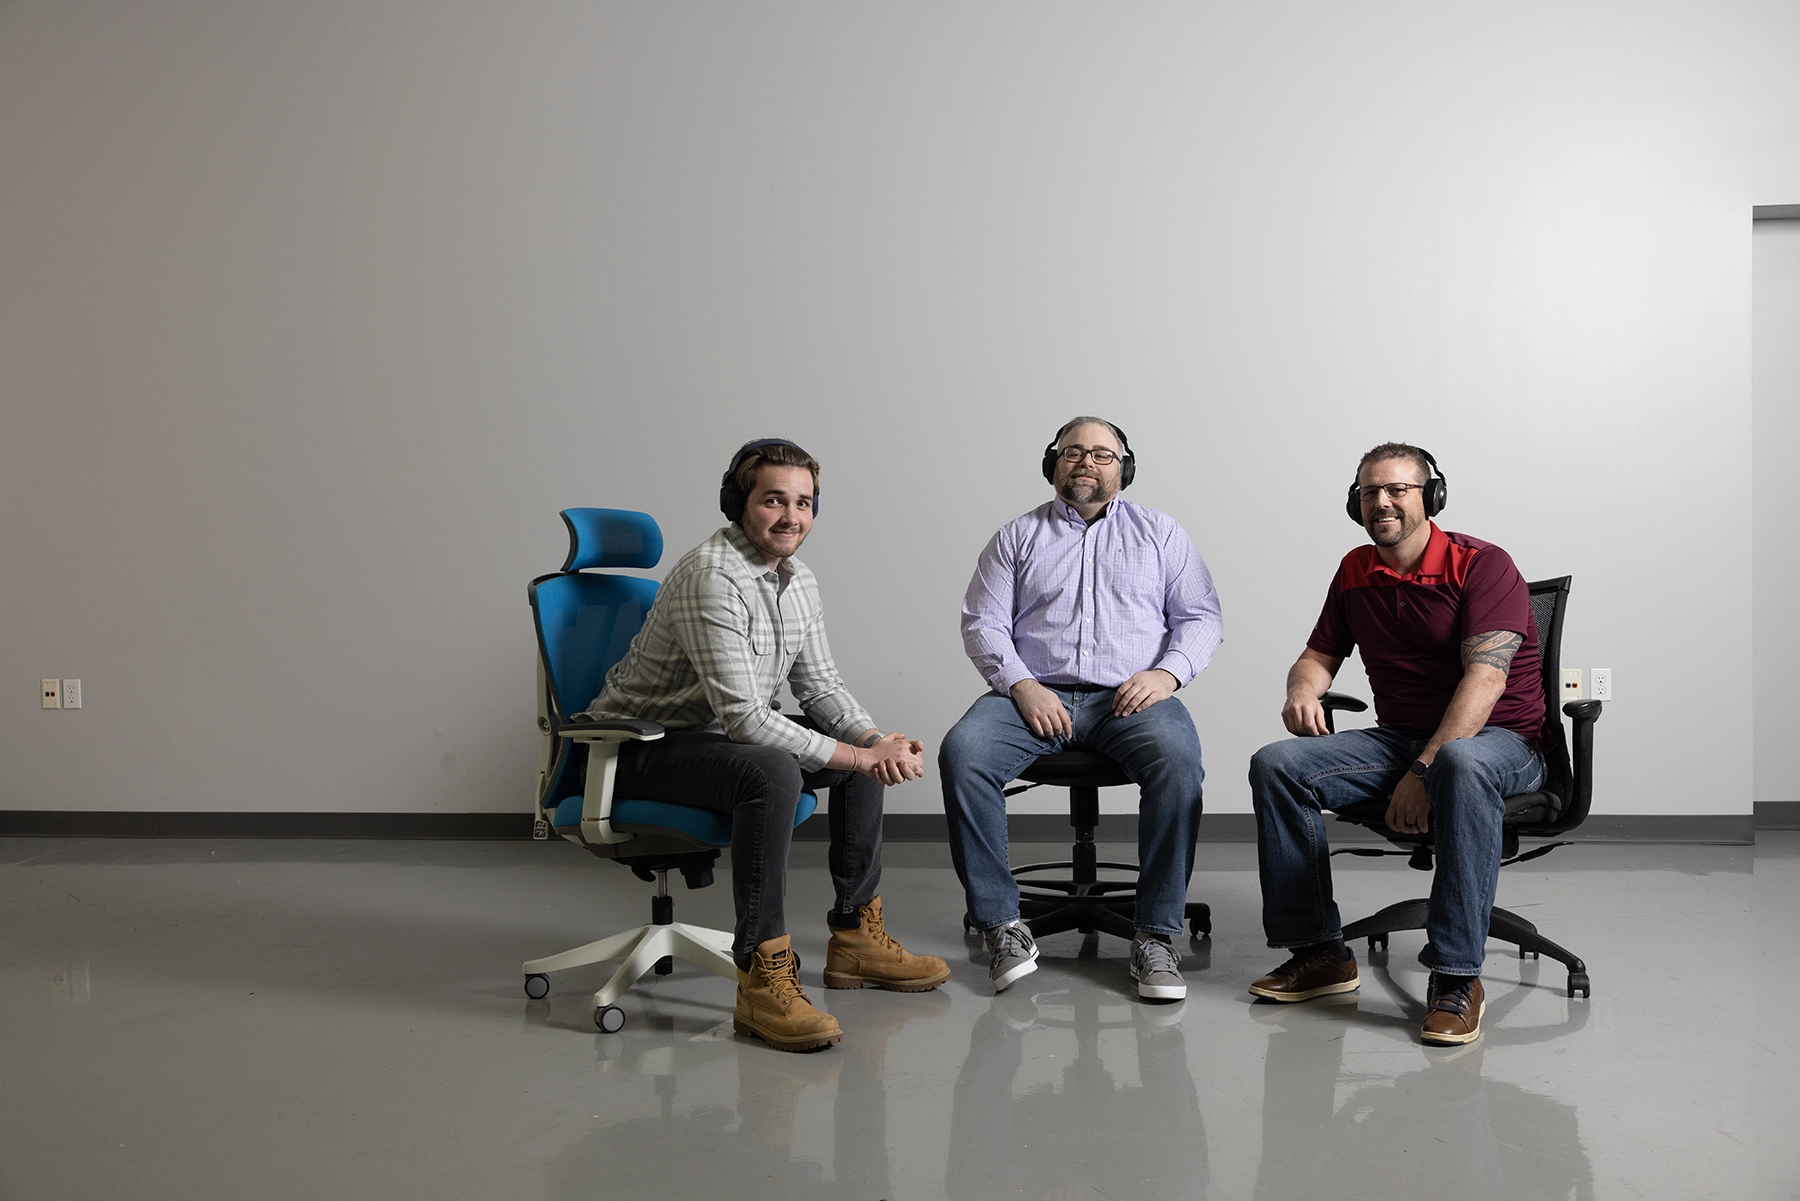 El equipo de soporte técnico de Code Blue posa en grupo sentado en sillas rodantes con los auriculares puestos.